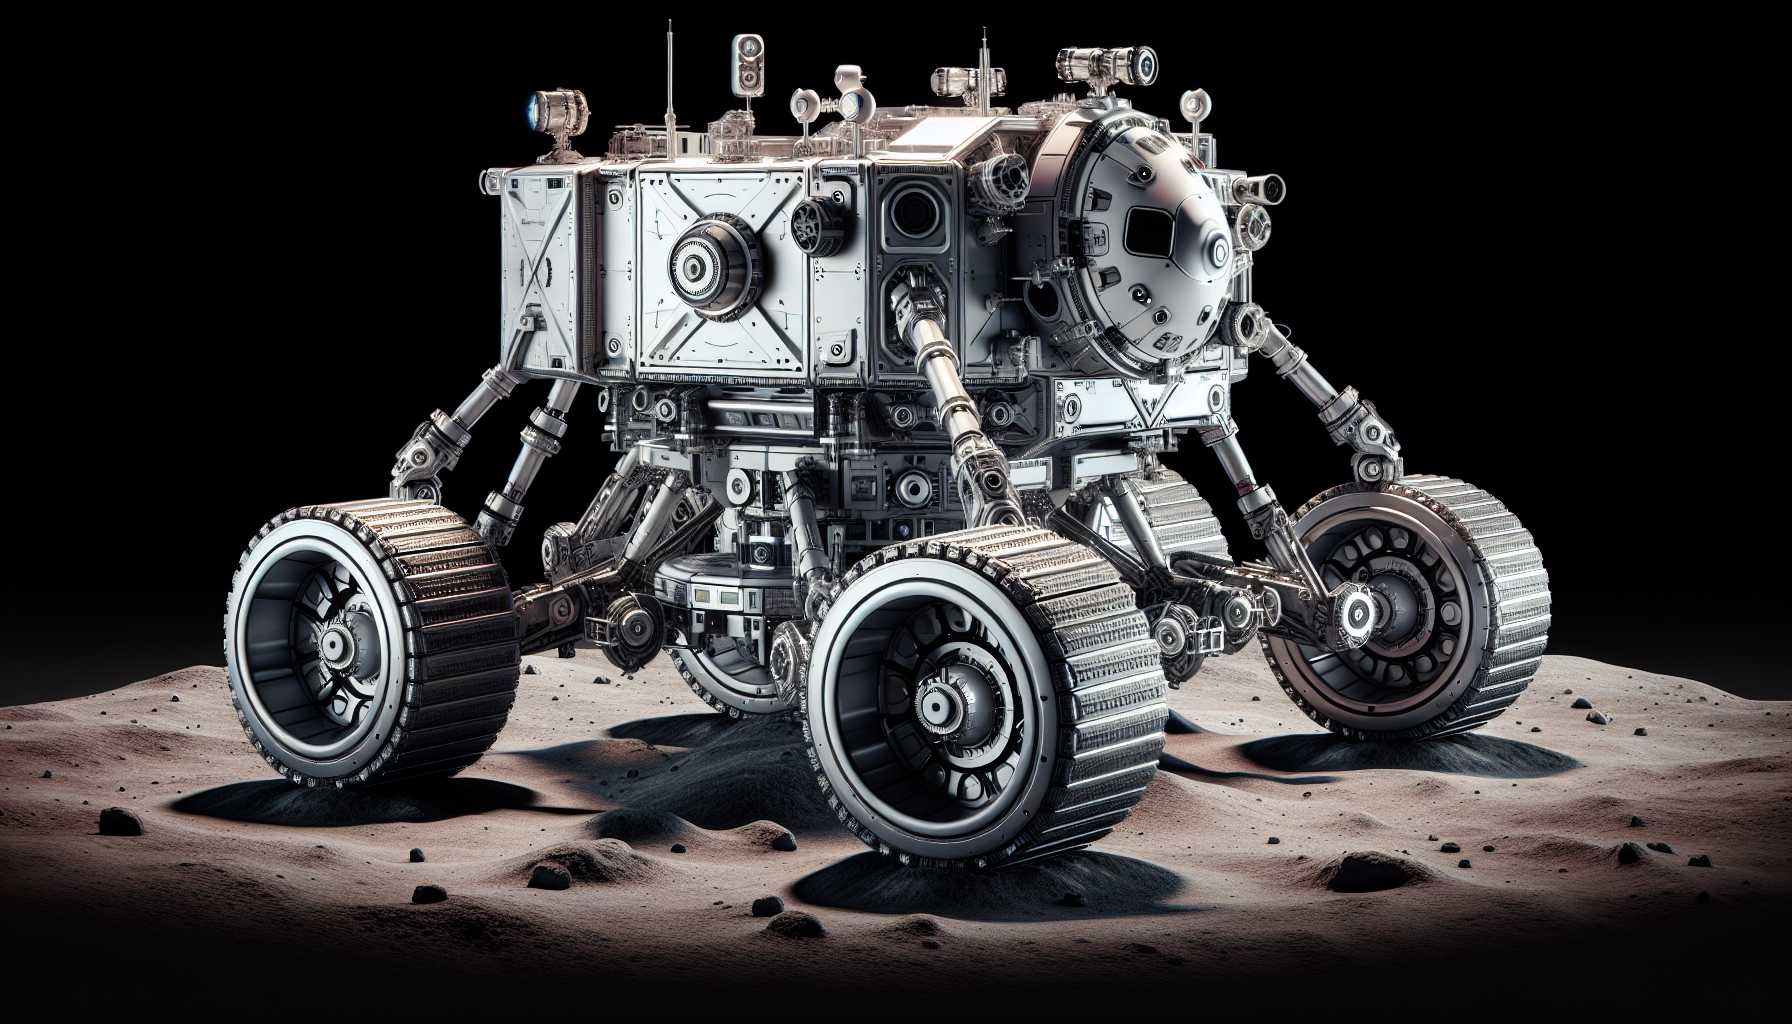 a robotic lunar lander designed for mining